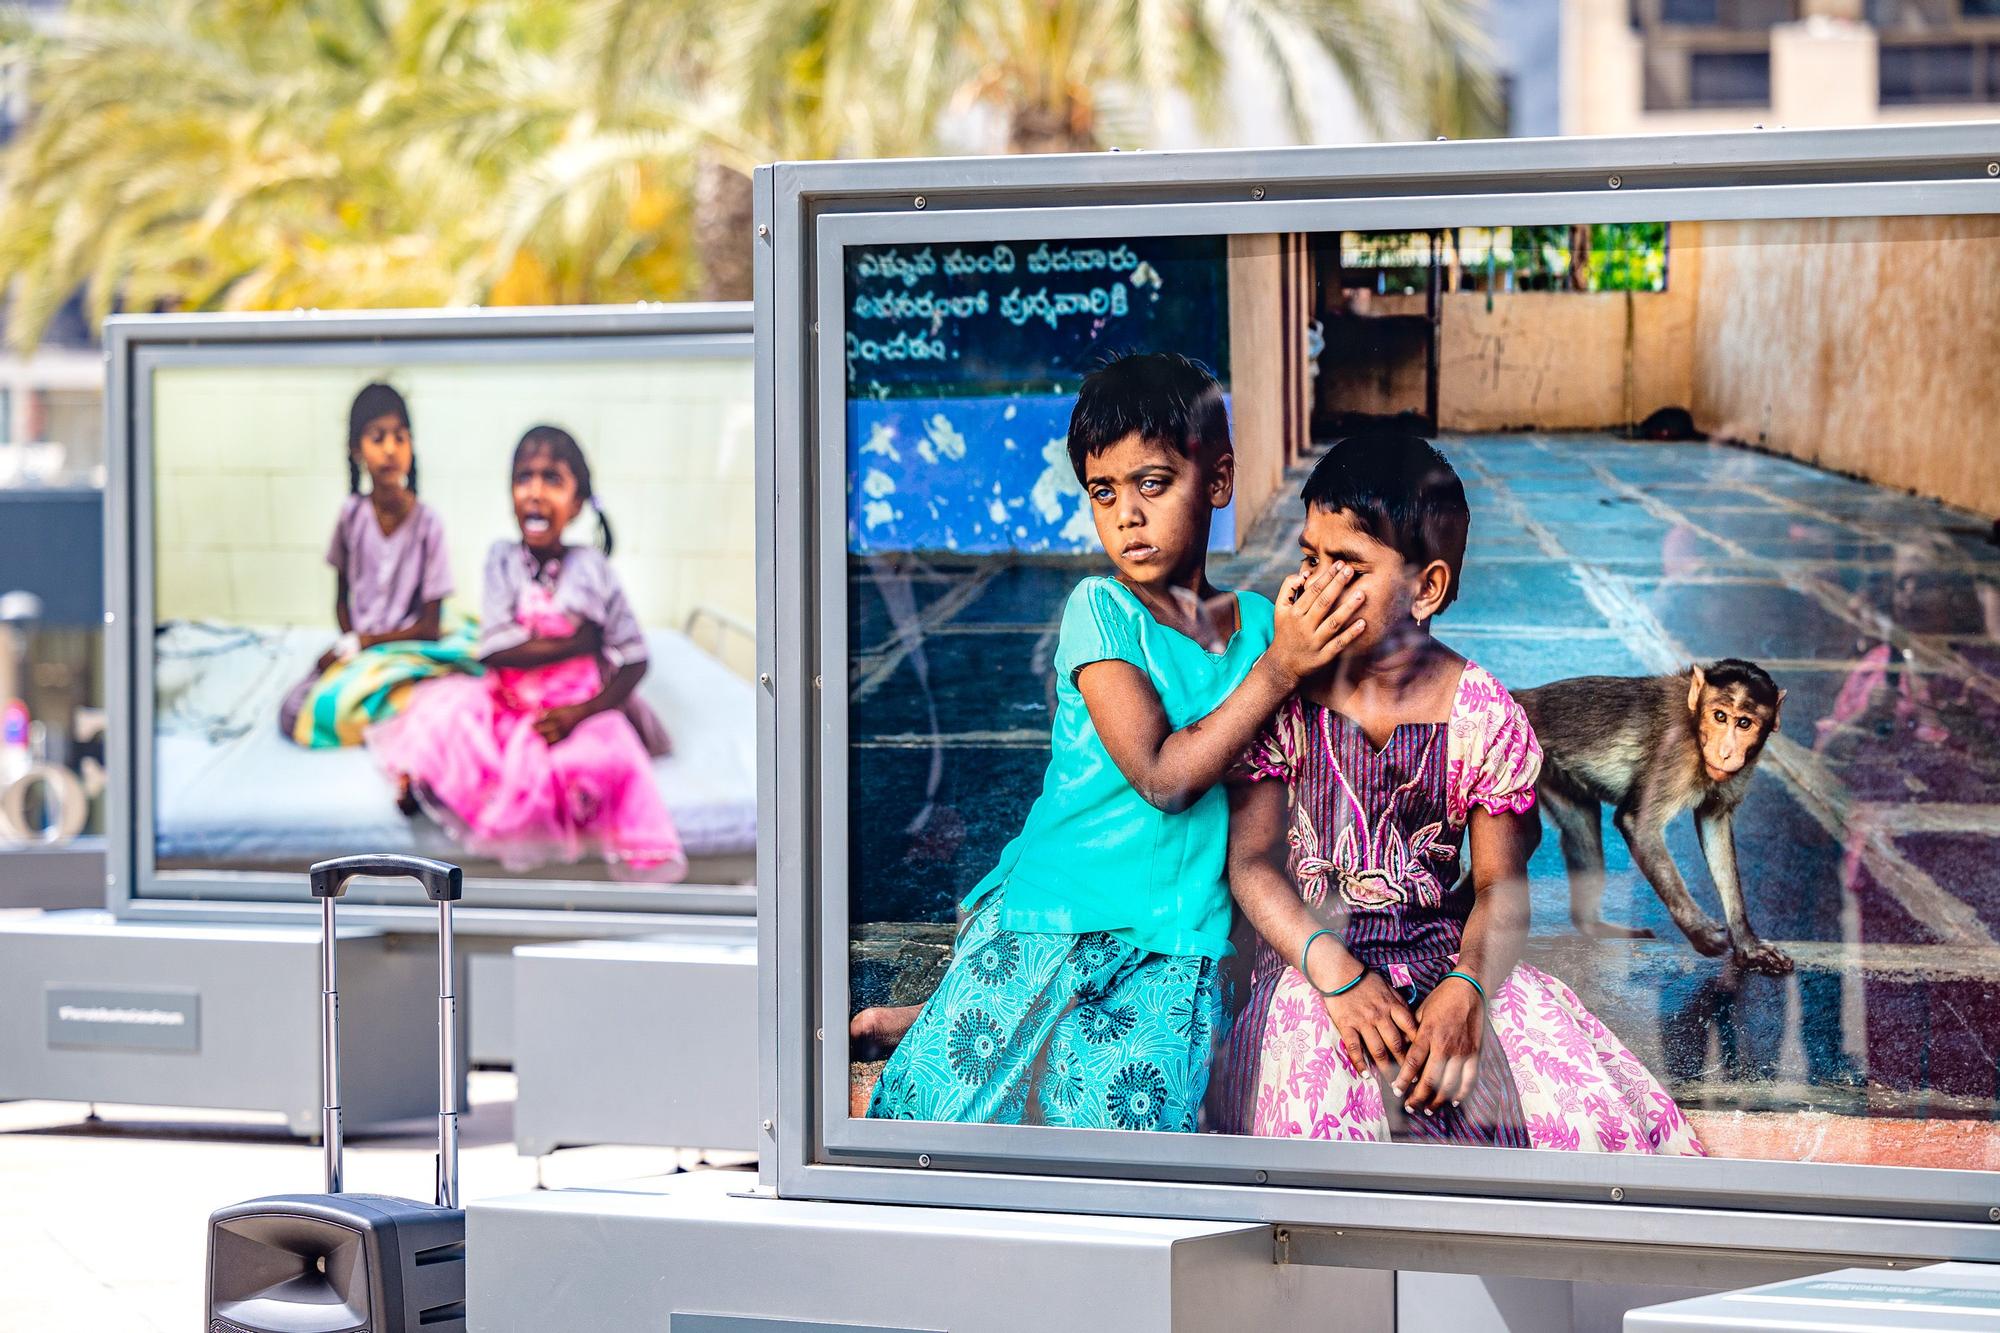 Cuarenta fotografías reflejan la vida cotidiana en Andhra Pradesh, una de las zonas más pobres de la India | La muestra se puede ver en la plaza de SS MM Los Reyes de España hasta el 11 de julio